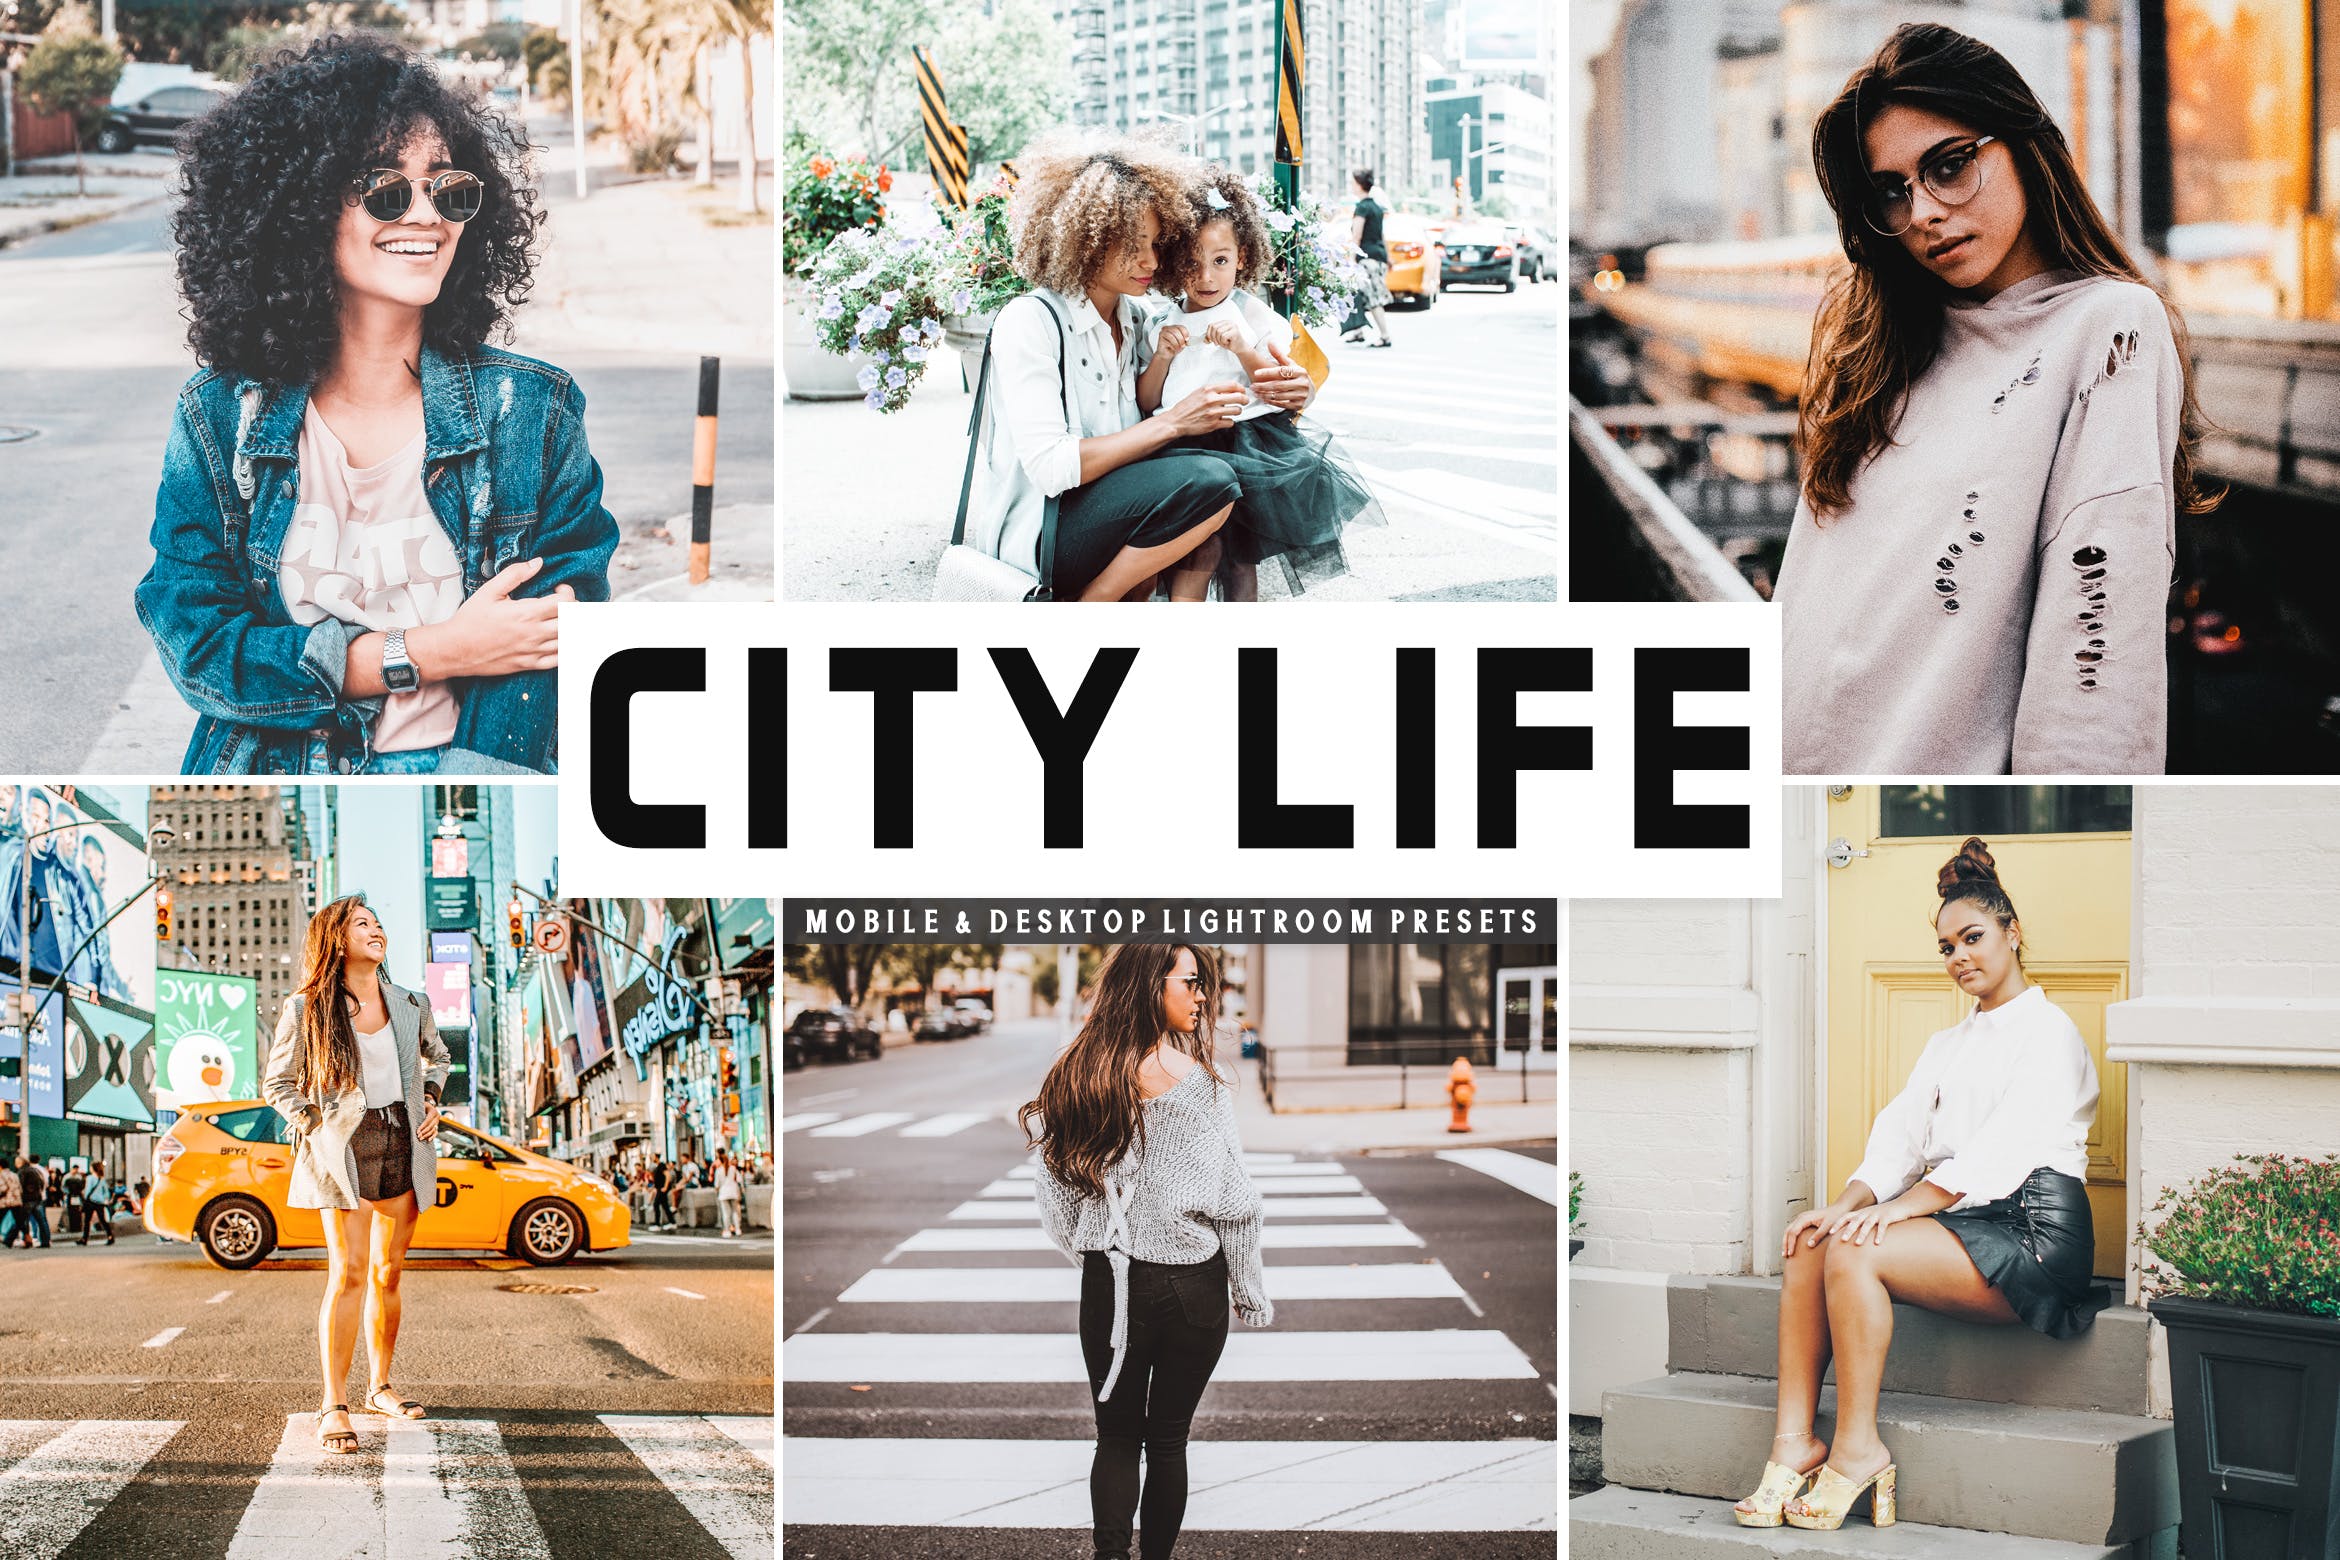 城市生活照片必备调色滤镜蚂蚁素材精选LR预设 City Life Mobile & Desktop Lightroom Presets插图